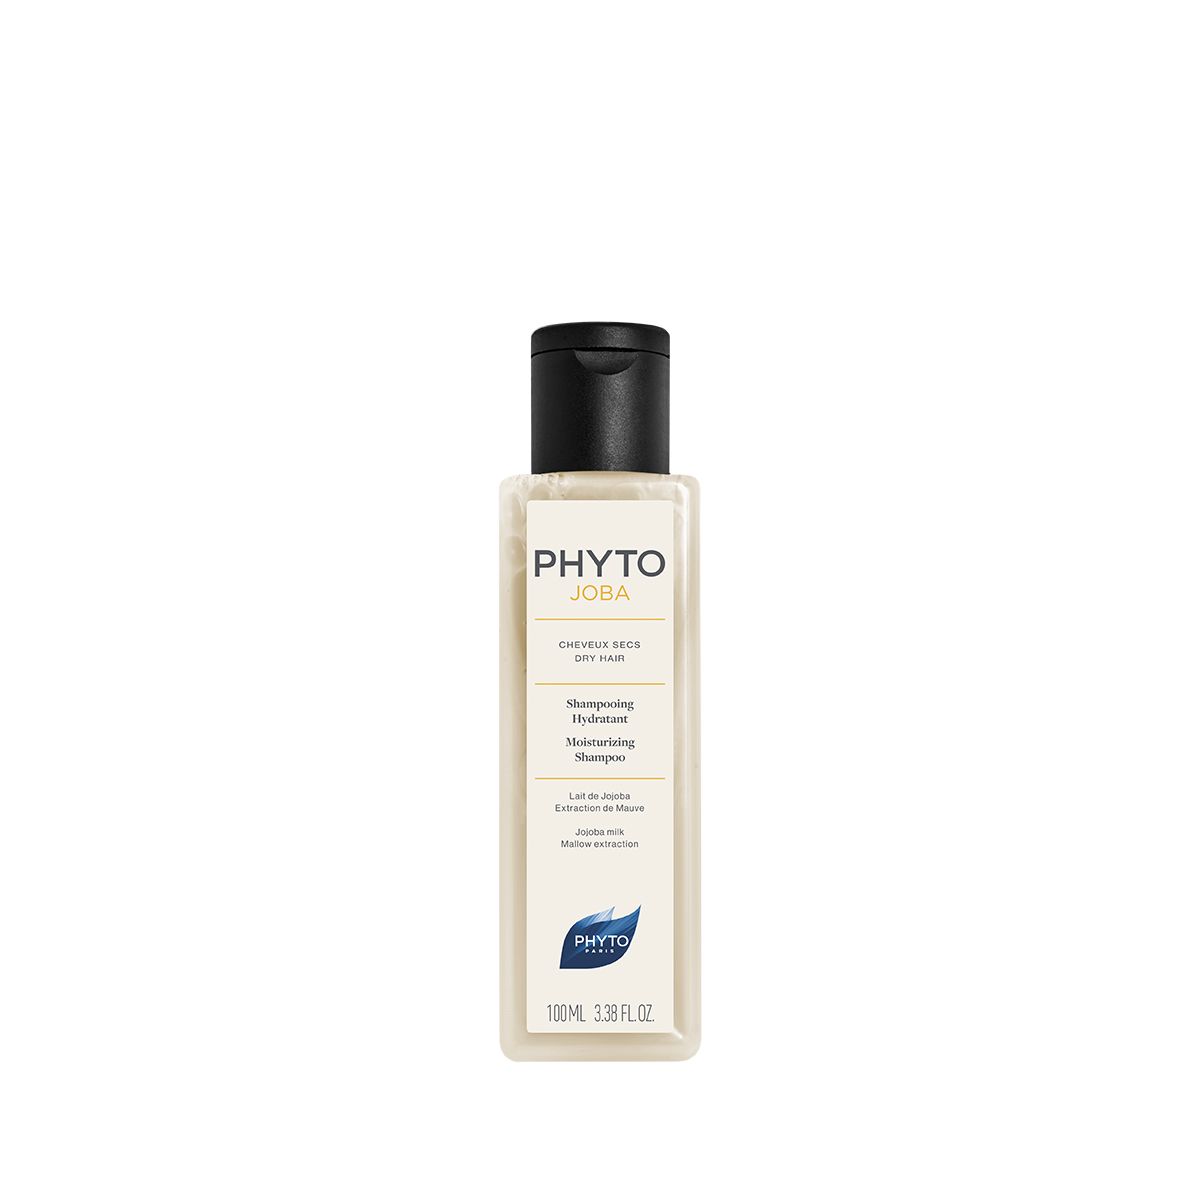 PHYTOJOBA Moisturizing Shampoo 100ml